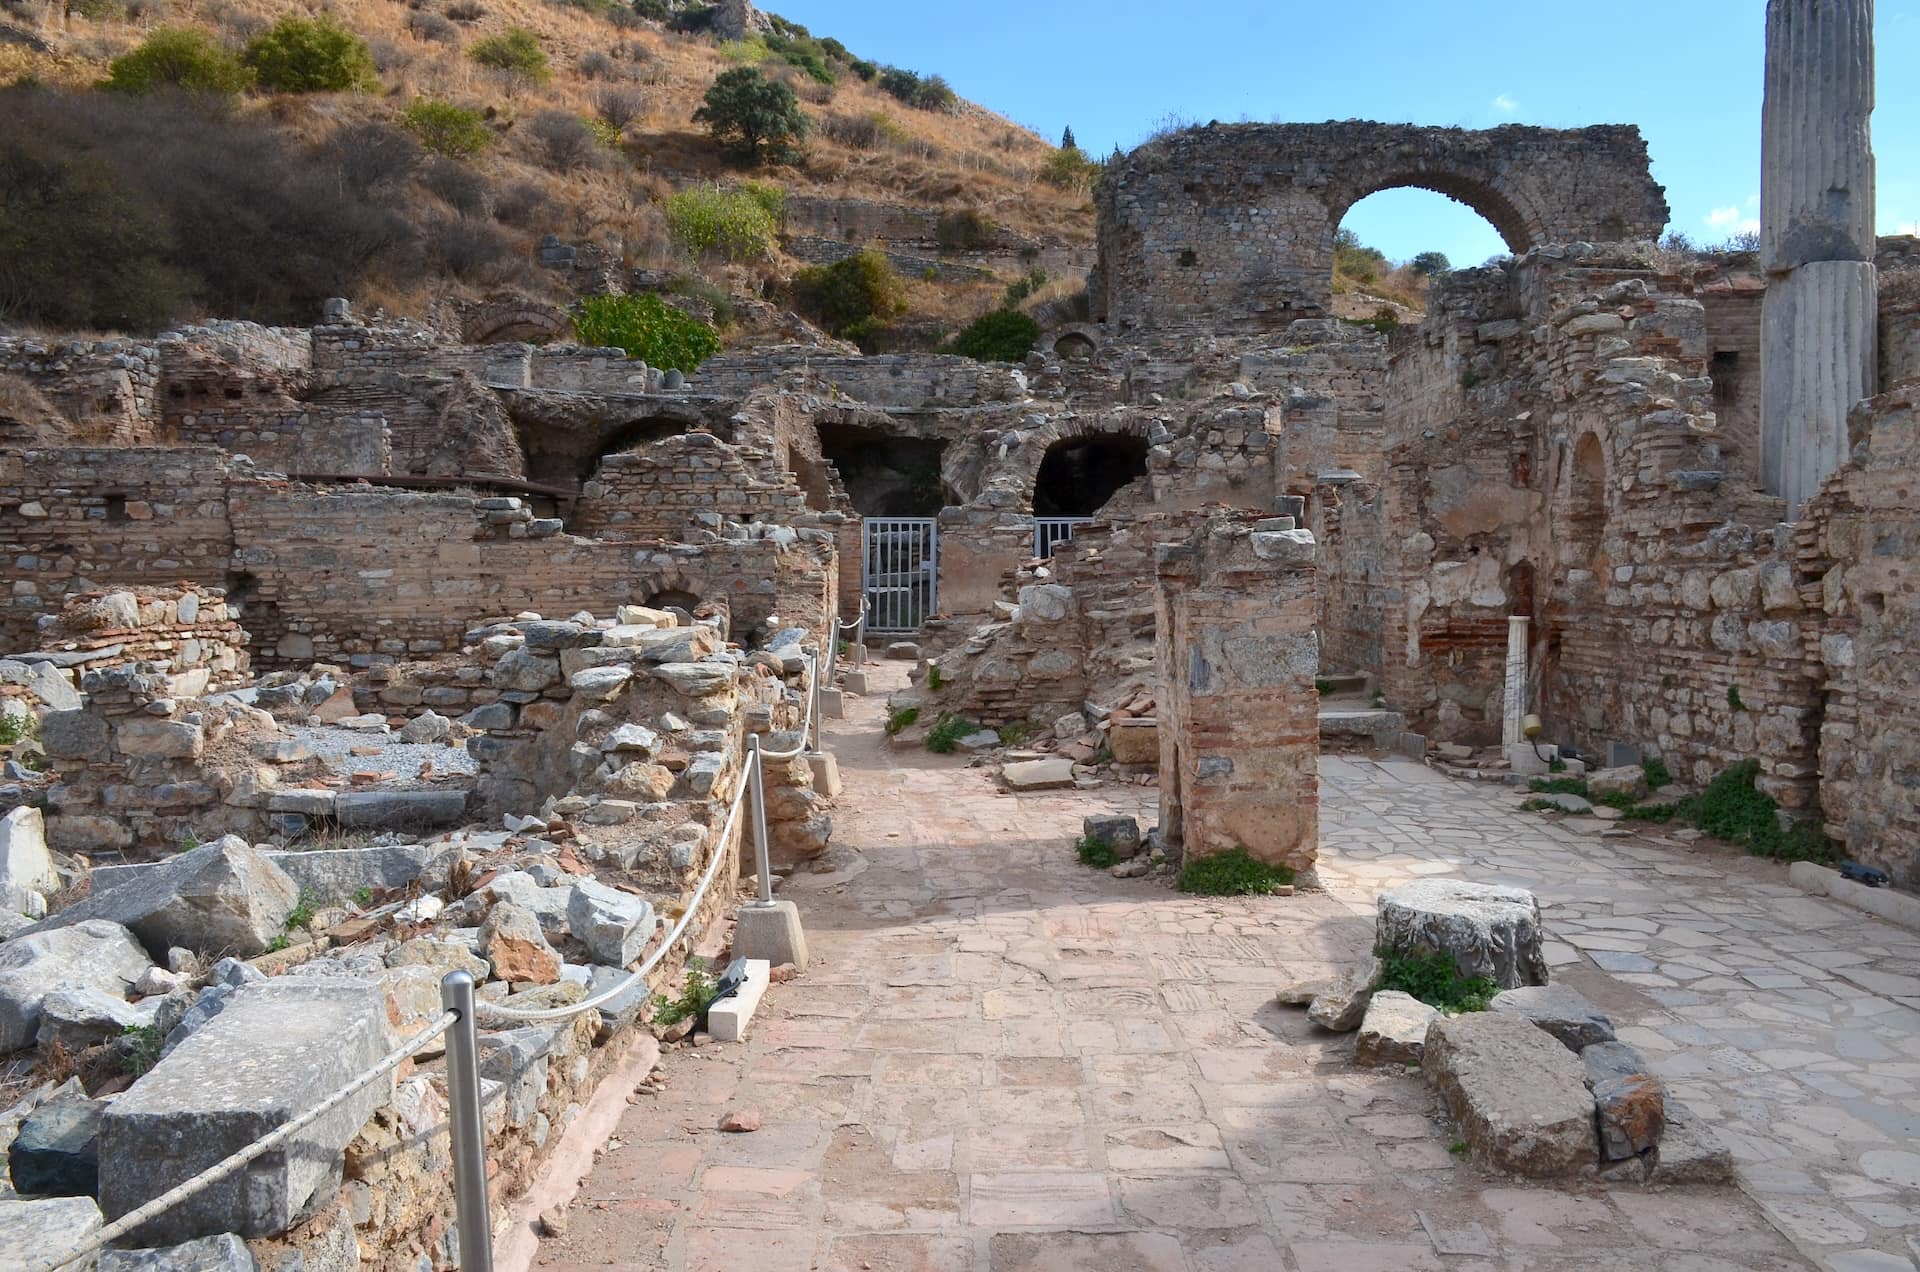 So-called House of Pleasure at Ephesus